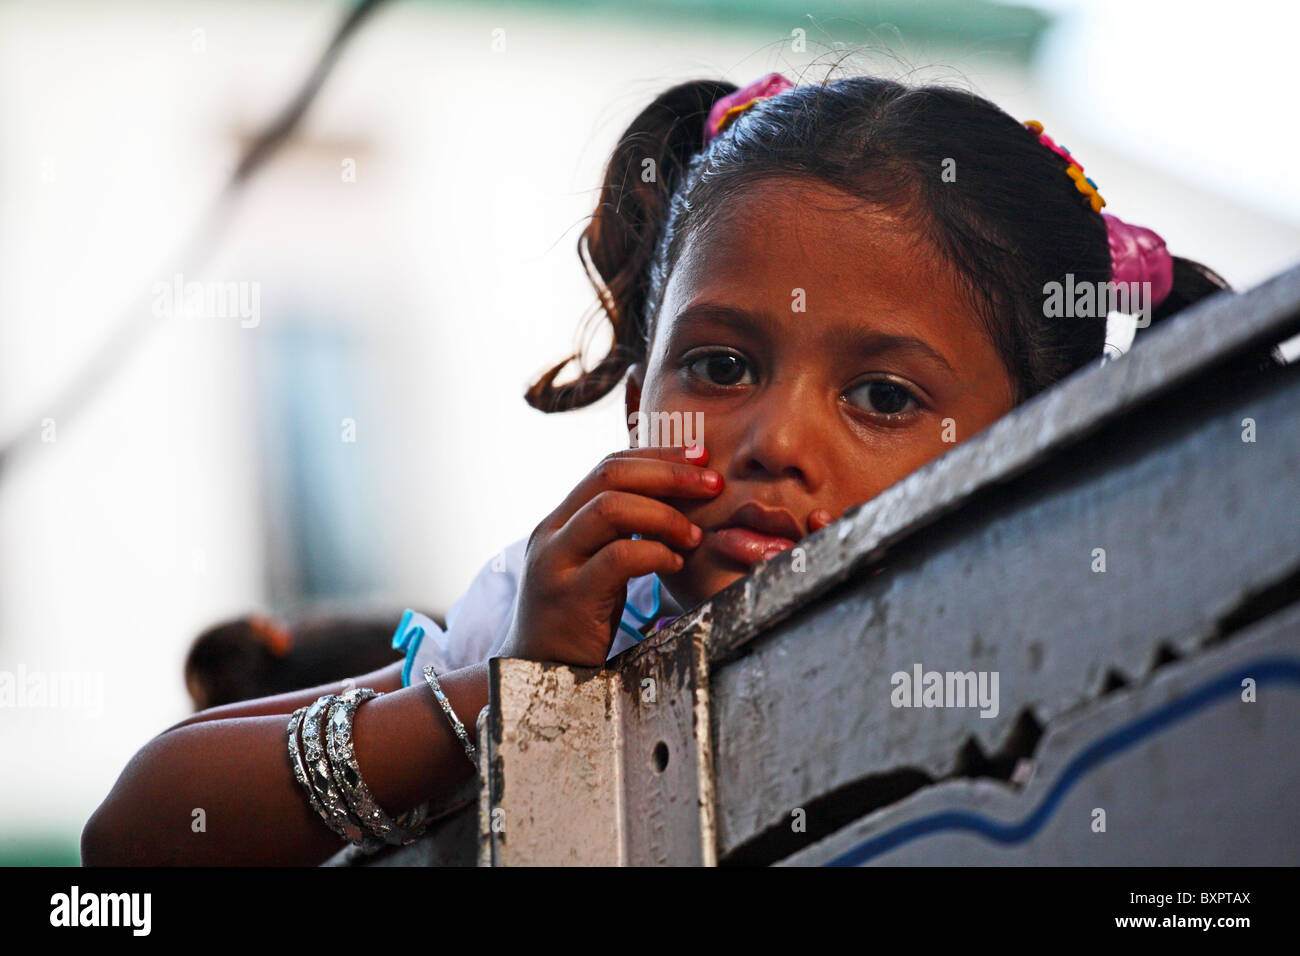 Child on street in Calcutta, India Stock Photo